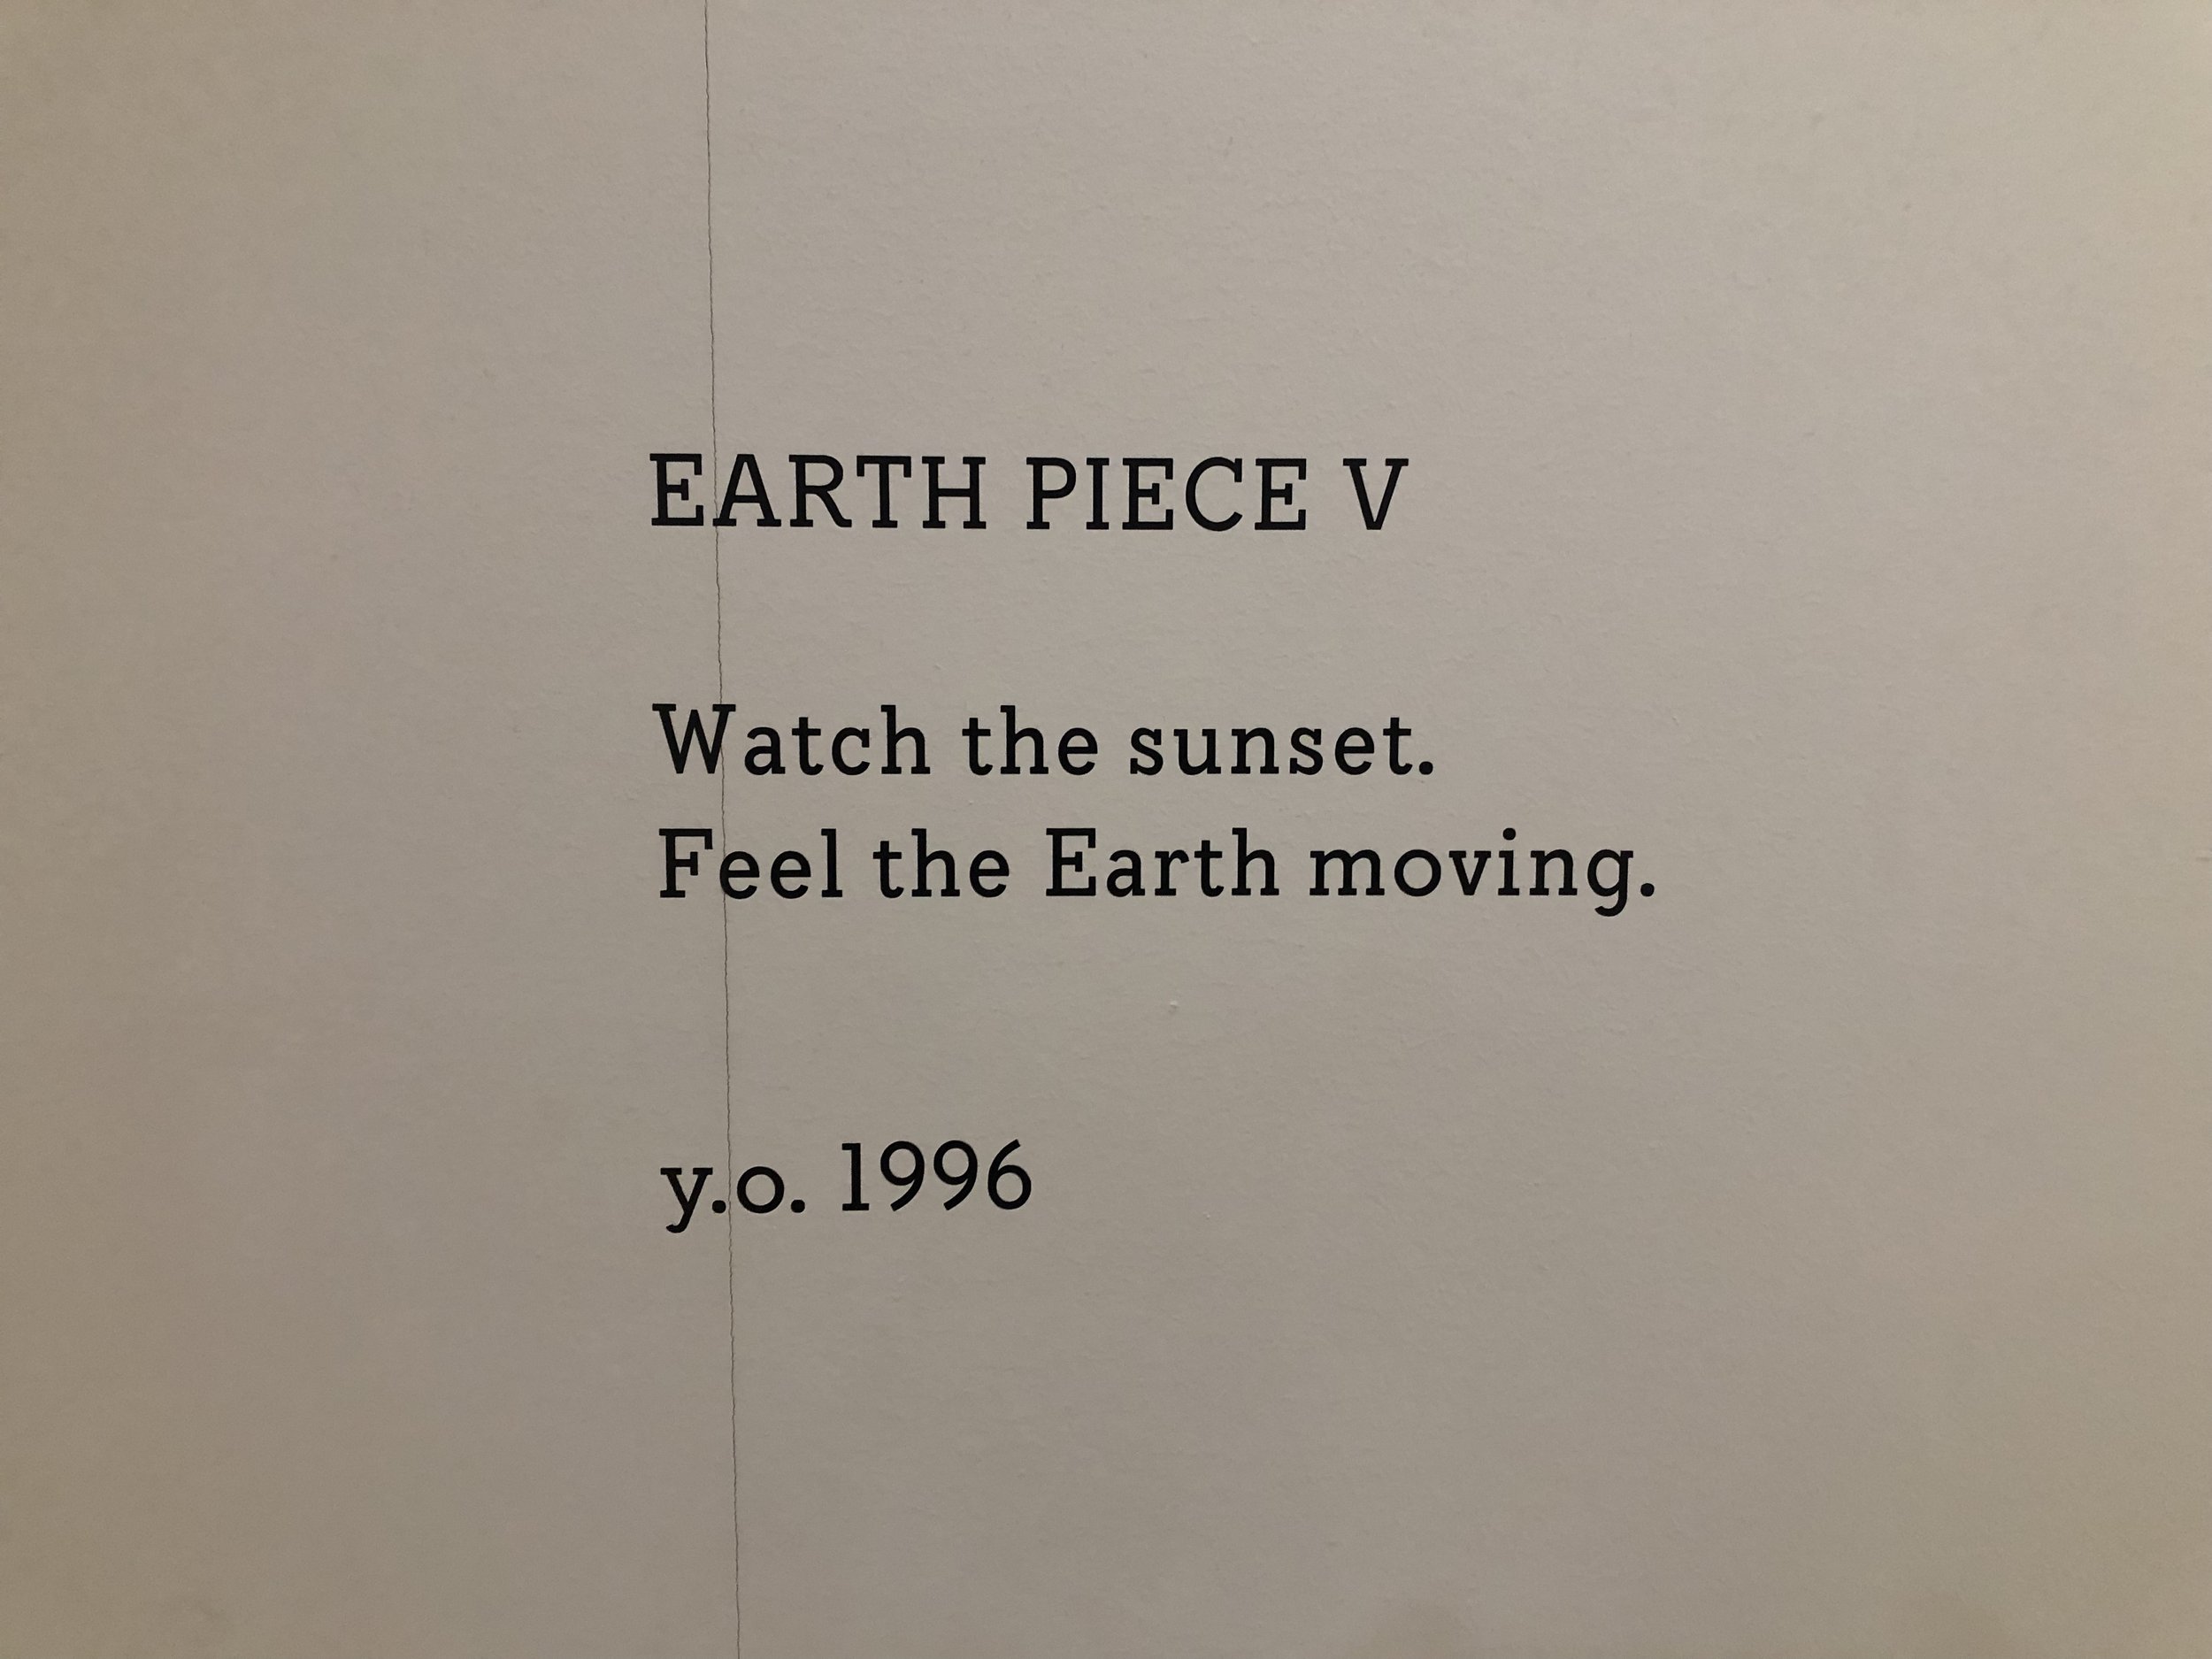 https://images.squarespace-cdn.com/content/v1/58716708e6f2e1d4215d7320/e73f8b8f-d88d-47ff-94b0-645cadcc0a69/Earth+Piece+-+Yoko+Poem.jpg